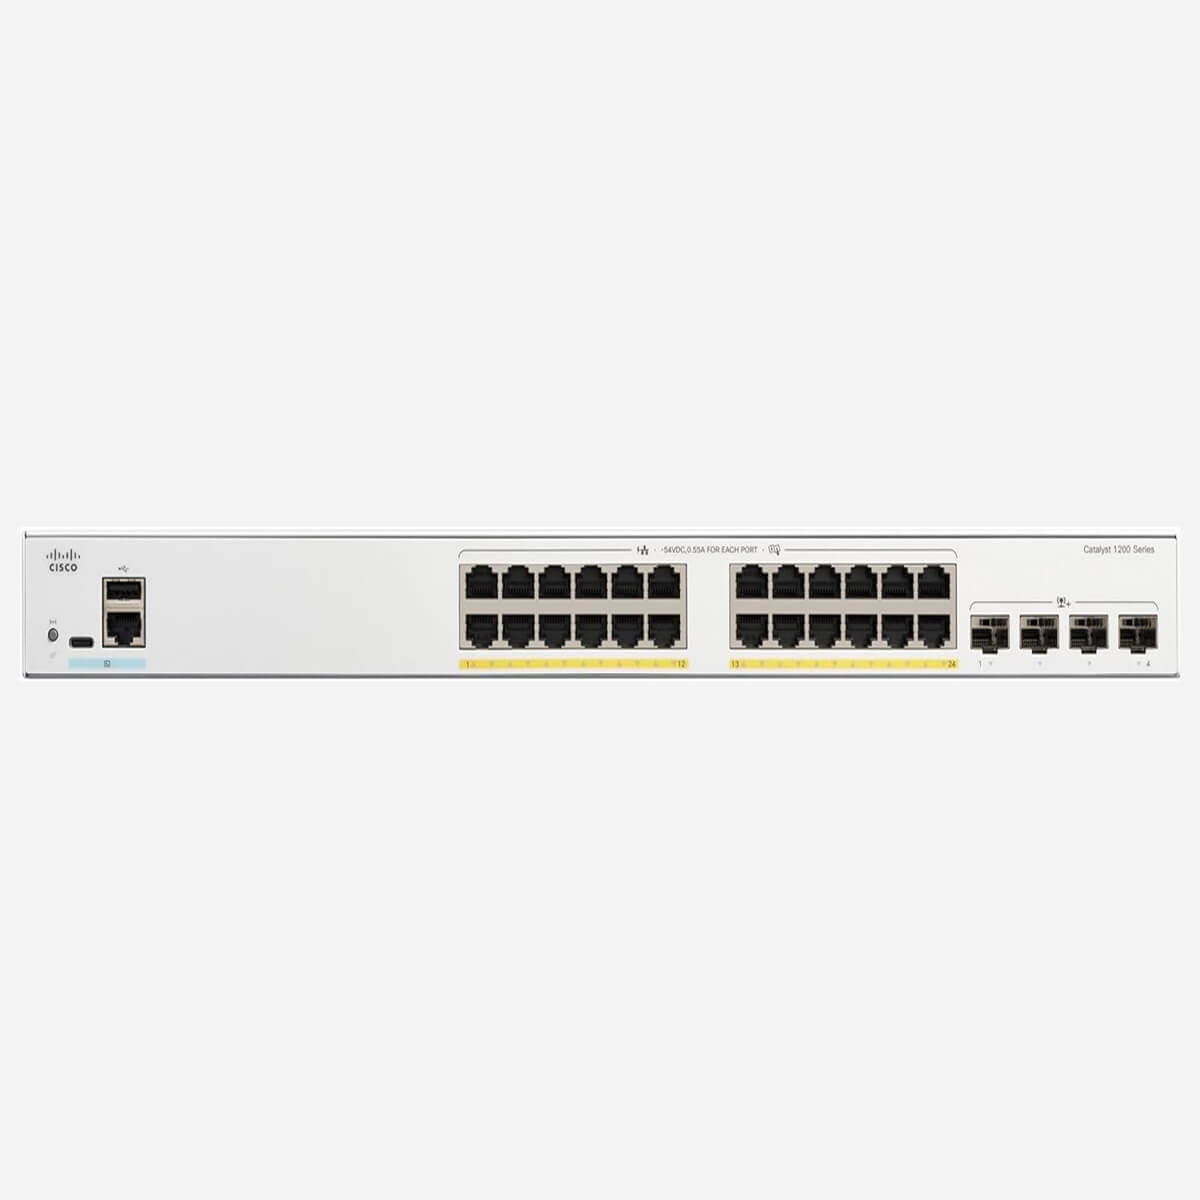 Hình ảnh switch Cisco C1200-24FP-4X với 24 cổng PoE+ và 4 cổng uplink 10 Gigabit Ethernet SFP+.